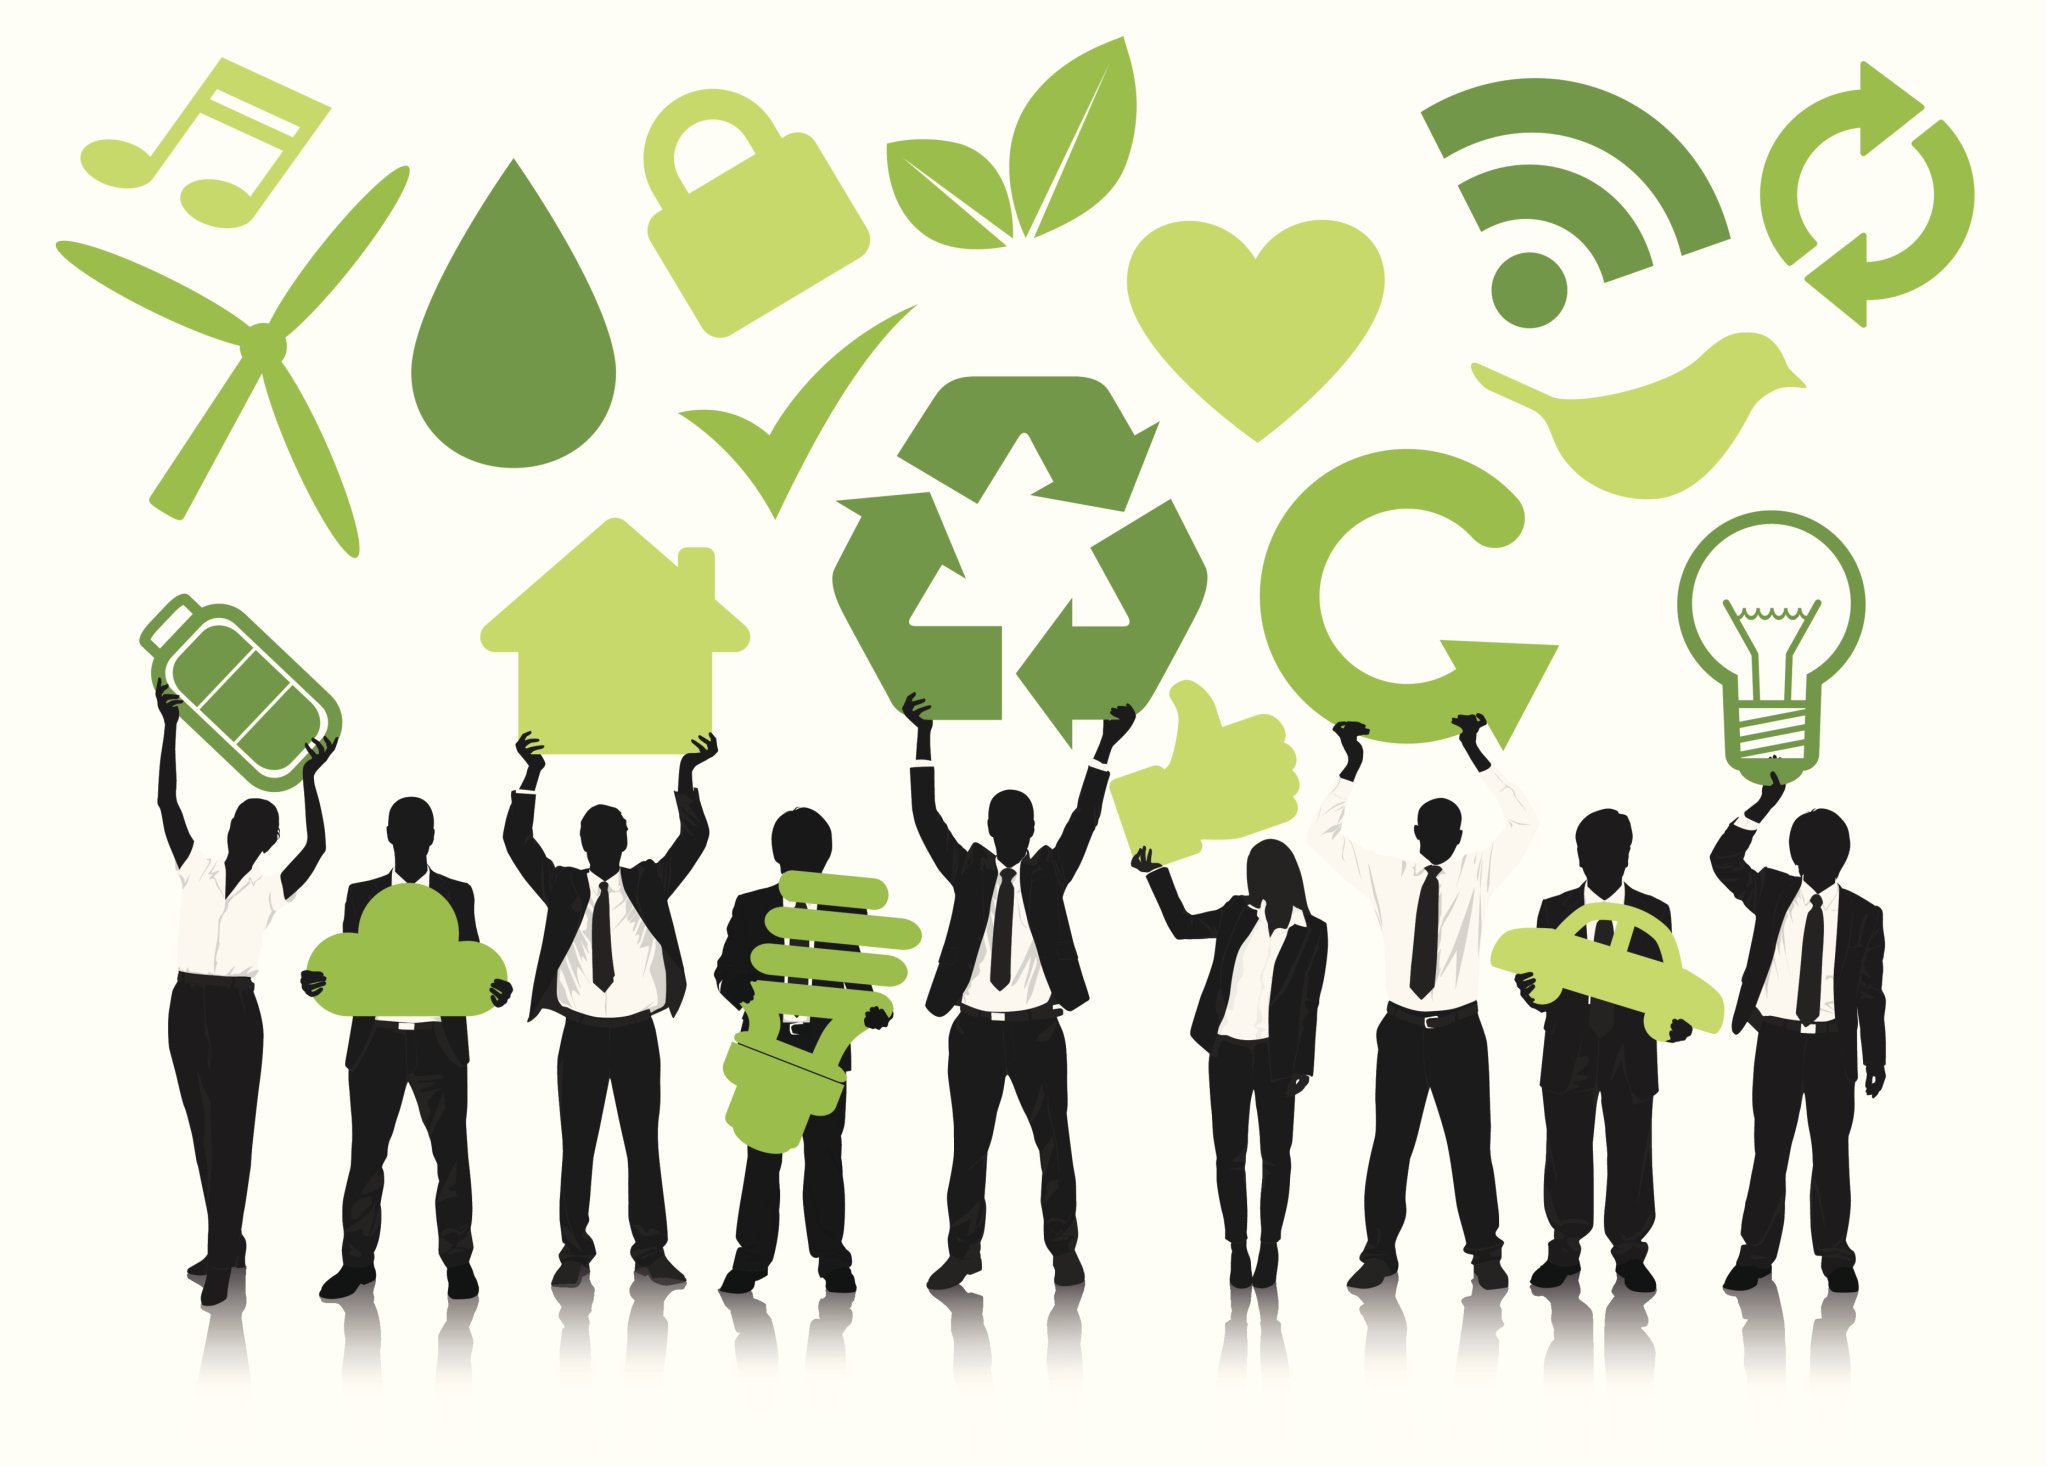 Ecology and people. Значок экологии. Экологичный бизнес. Маркетинг иллюстрация в зеленых тонах. Зеленый менеджмент.